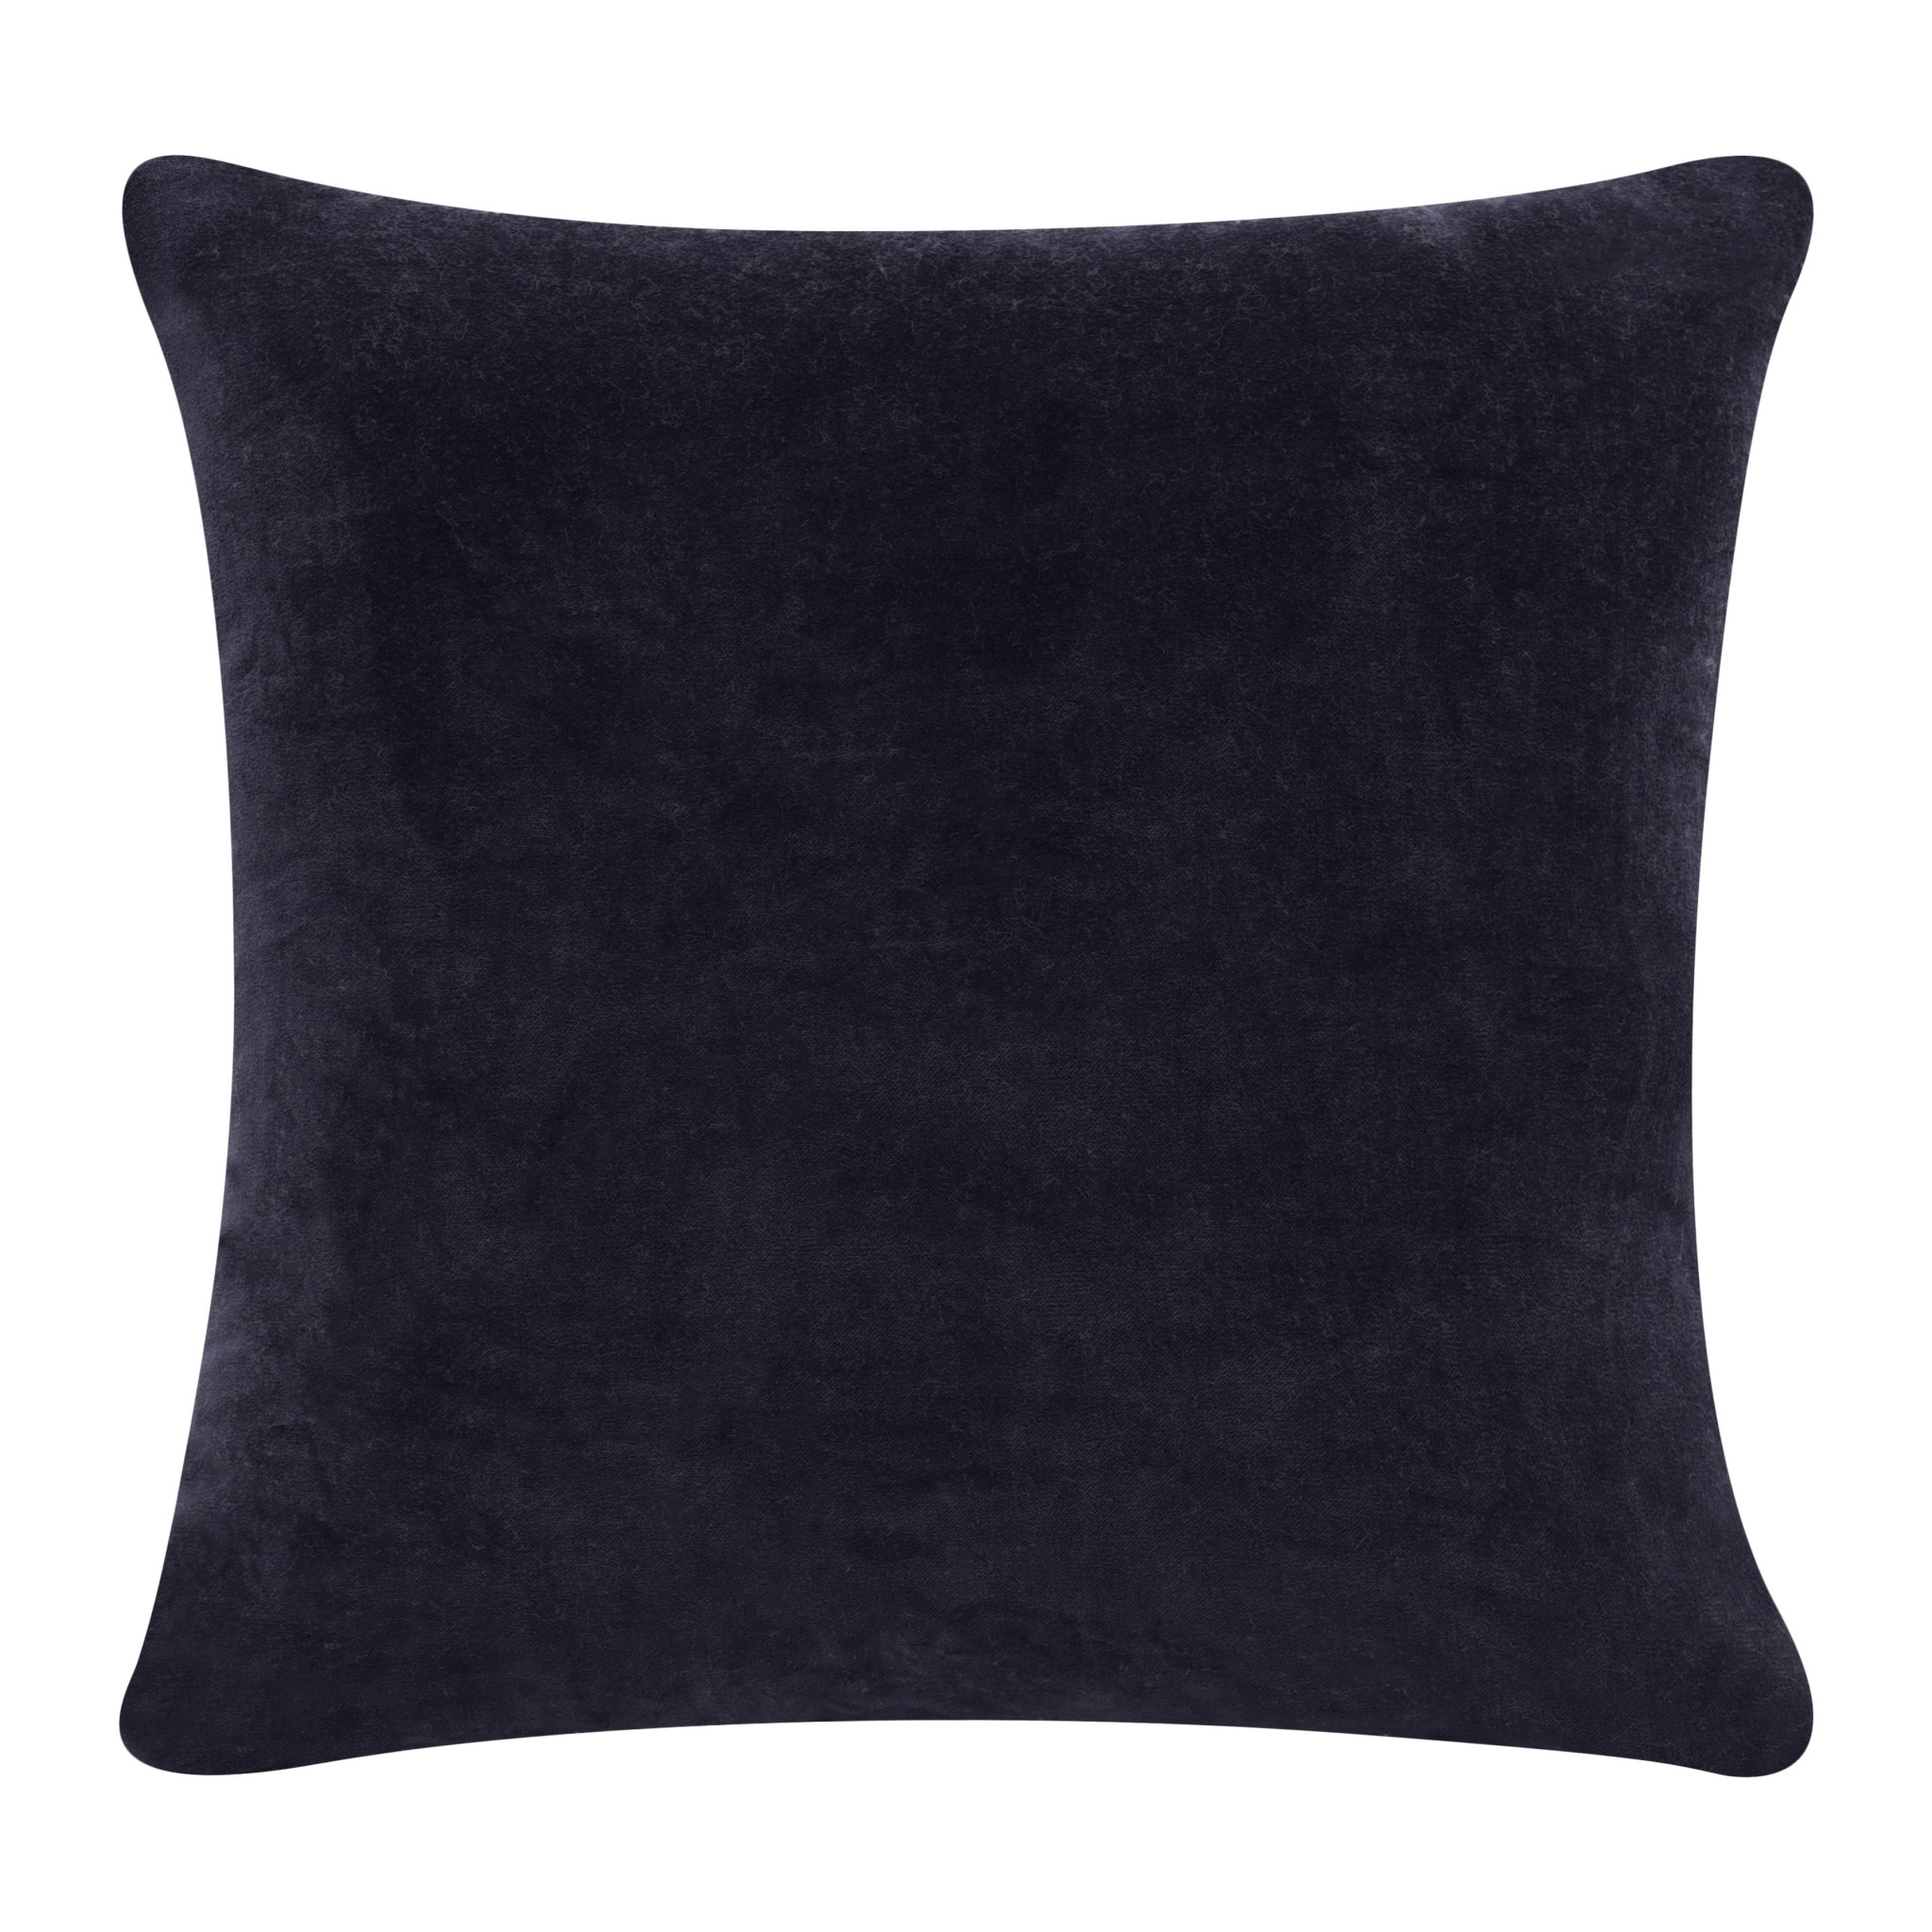 20" X 20" Black 100% Cotton Zippered Pillow-517049-1